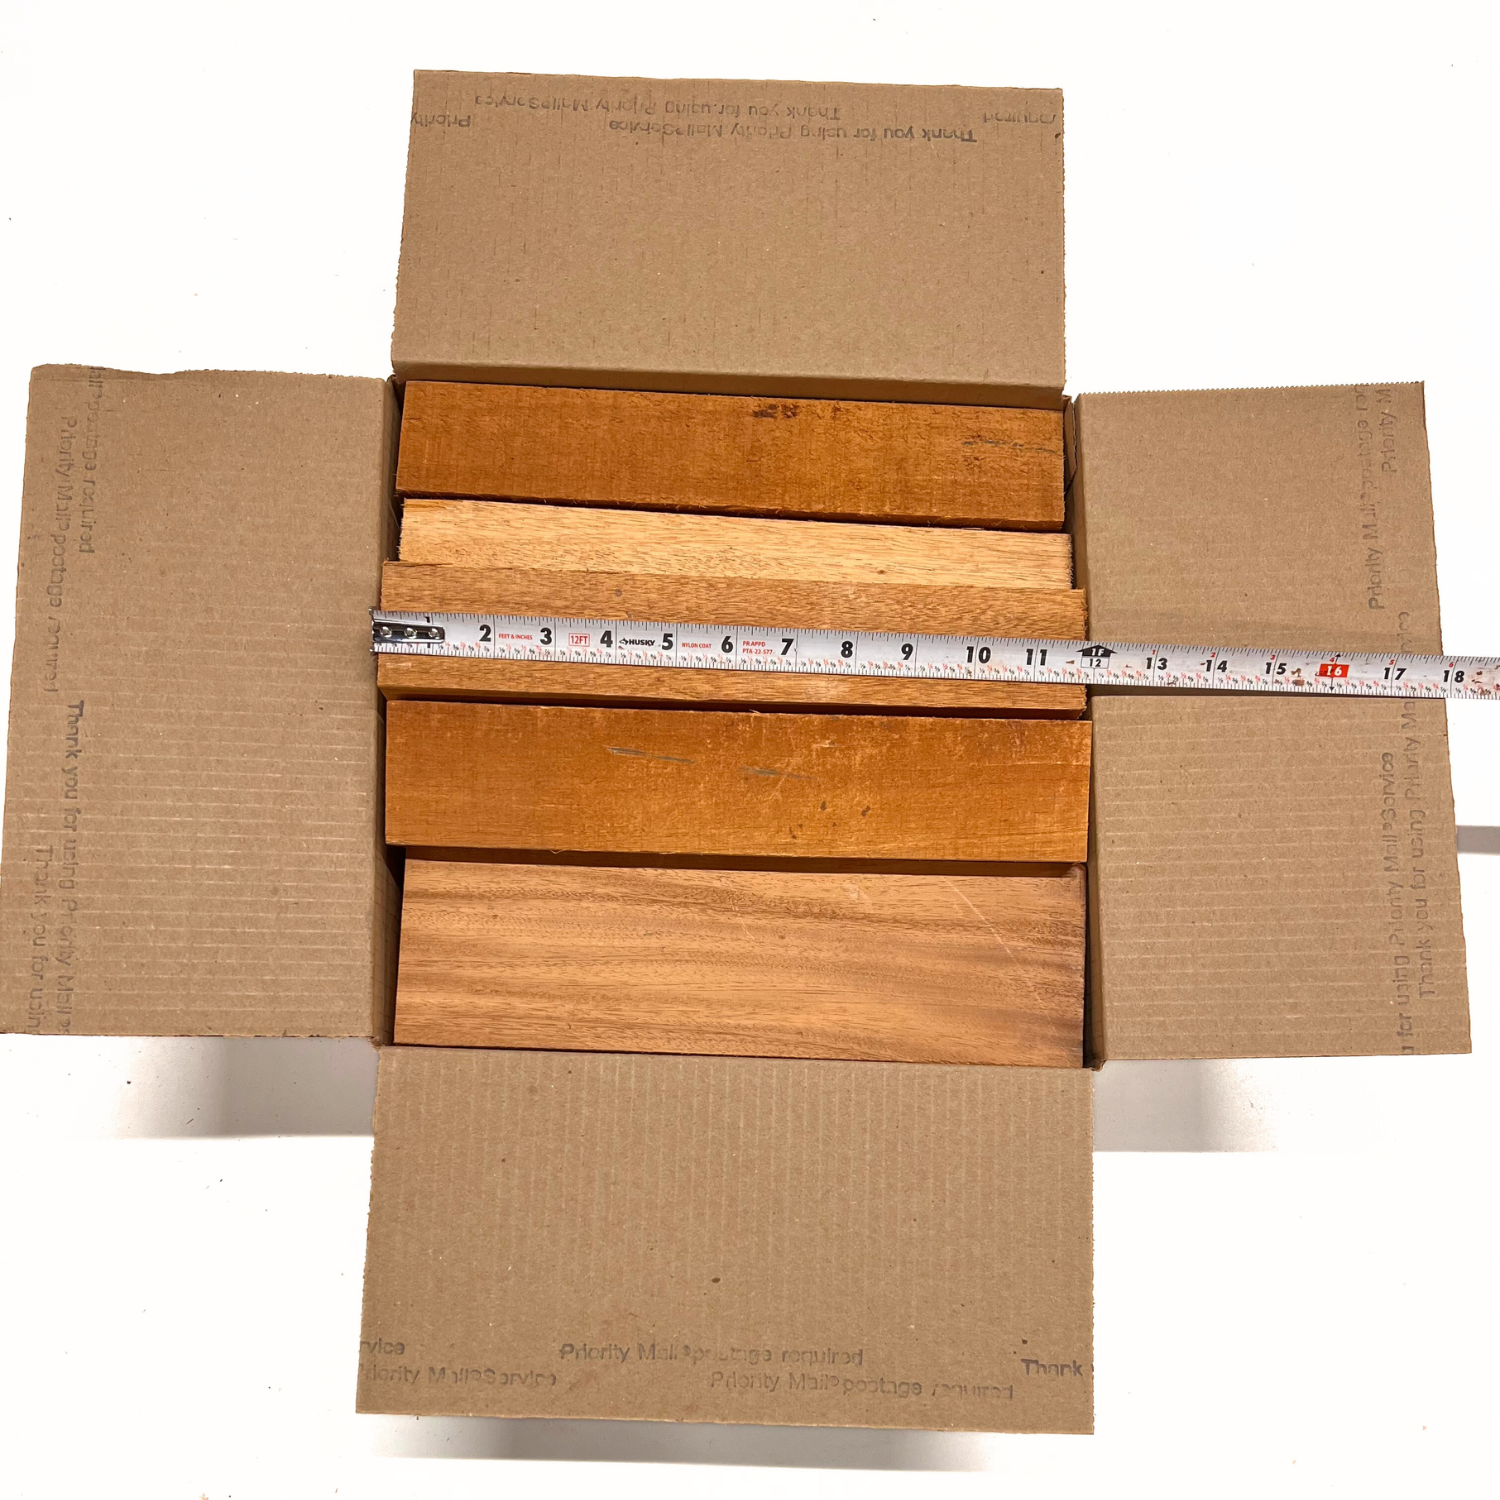 Recortes de madera para manualidades, cuadrados de madera (3.0 x 3.0 i